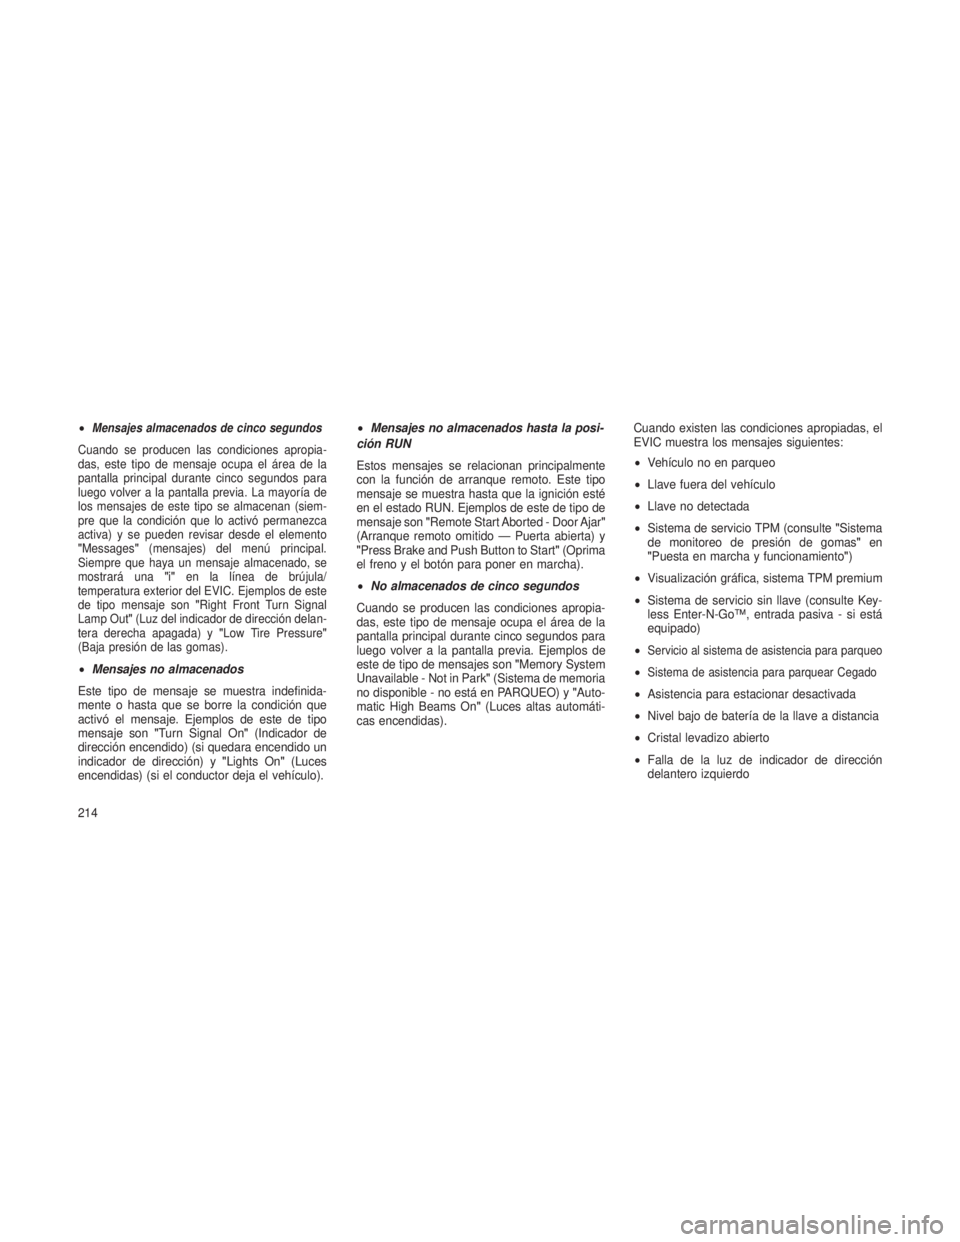 JEEP GRAND CHEROKEE 2013  Manual de Empleo y Cuidado (in Spanish) •Mensajes almacenados de cinco segundos
Cuando se producen las condiciones apropia-
das, este tipo de mensaje ocupa el área de la
pantalla principal durante cinco segundos para
luego volver a la pa